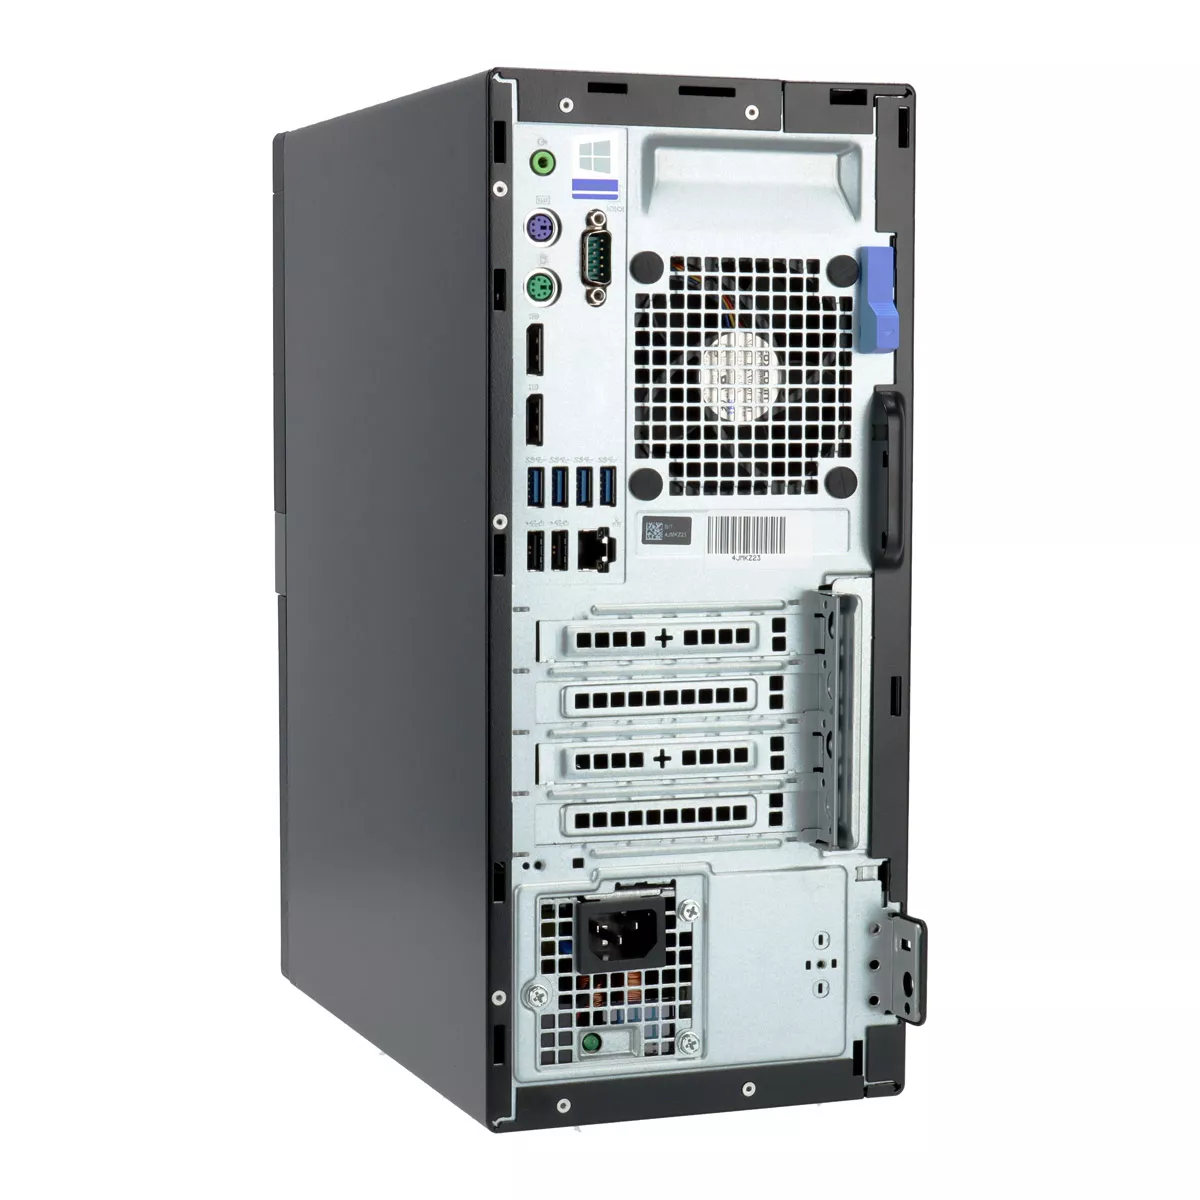 Dell Optiplex 7070 Mini Tower Core i7 9700 16 GB 240 GB SSD M.2 NVMe B